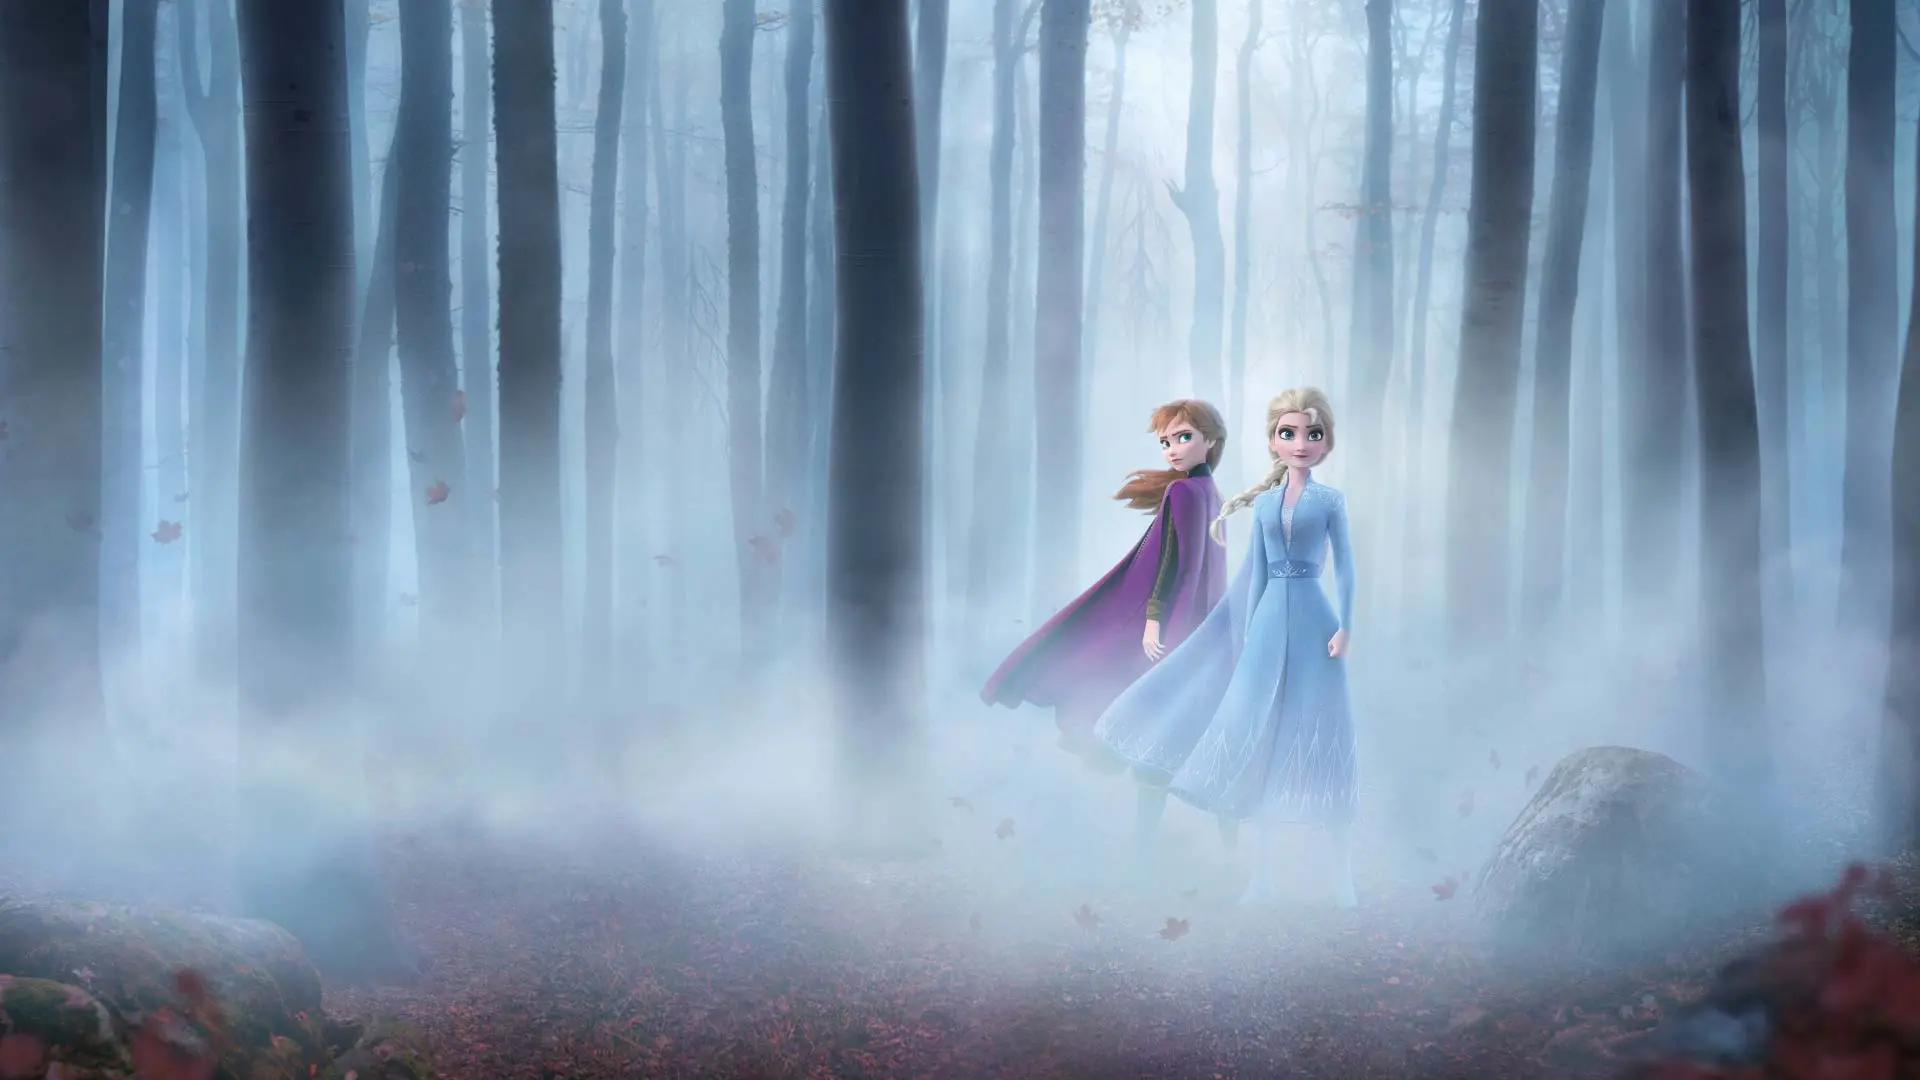 السا و آنا از انیمیشن یخ زده در میان جنگل مه آلود